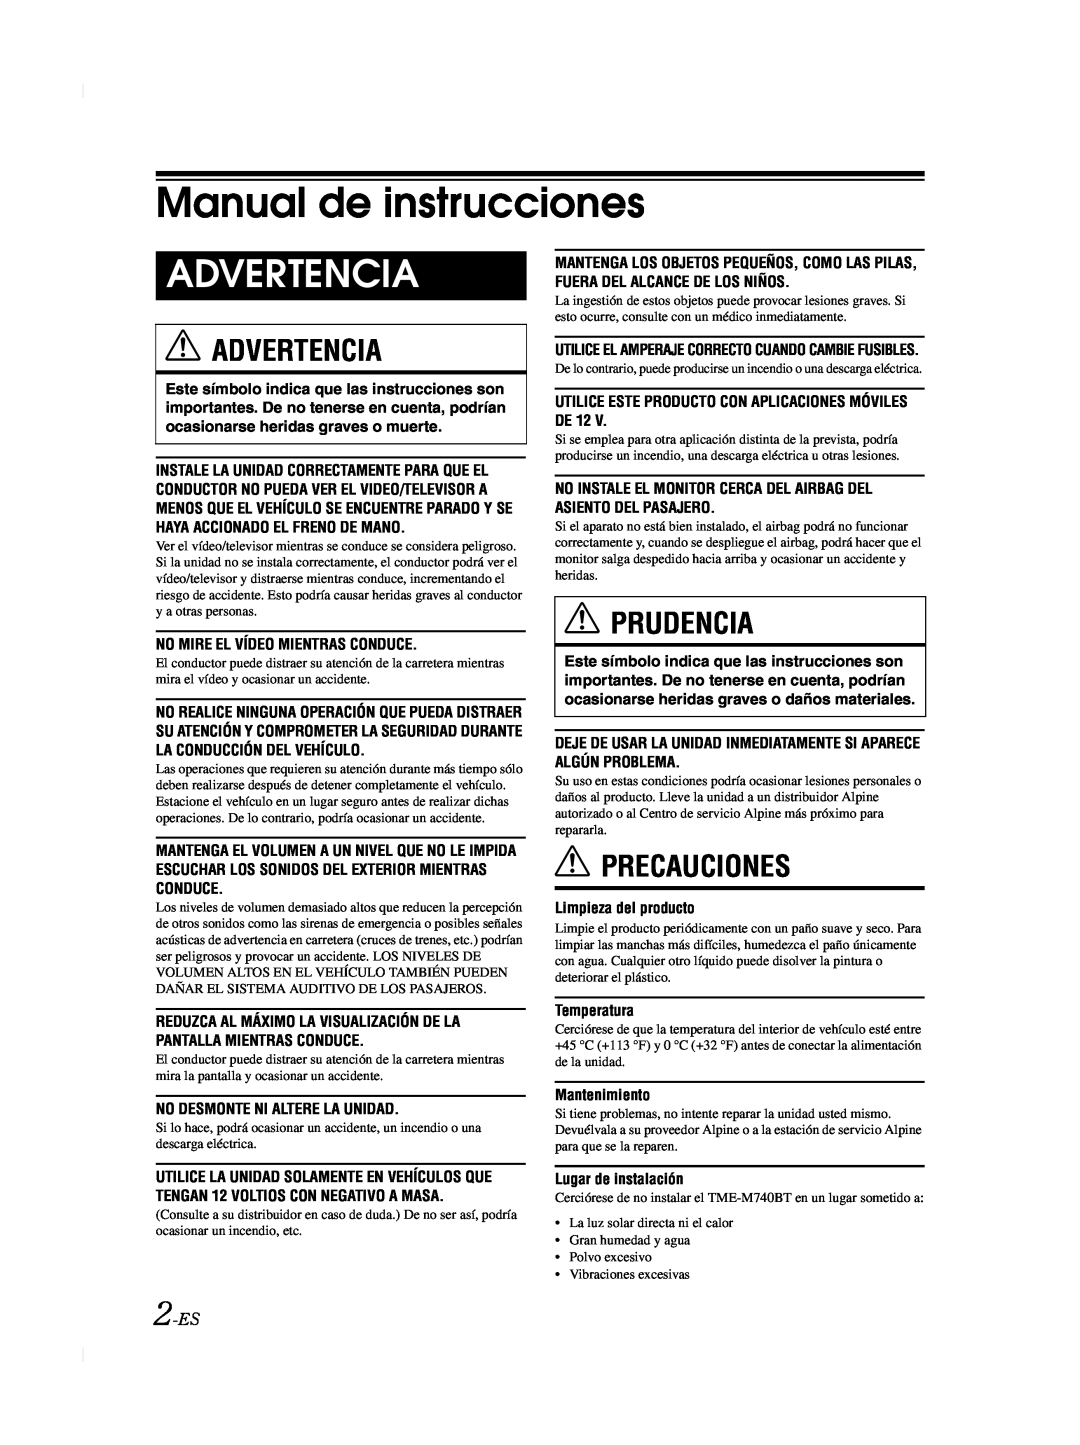 Alpine TME-M740BT owner manual Manual de instrucciones, Advertencia, Prudencia, Precauciones, 2-ES 